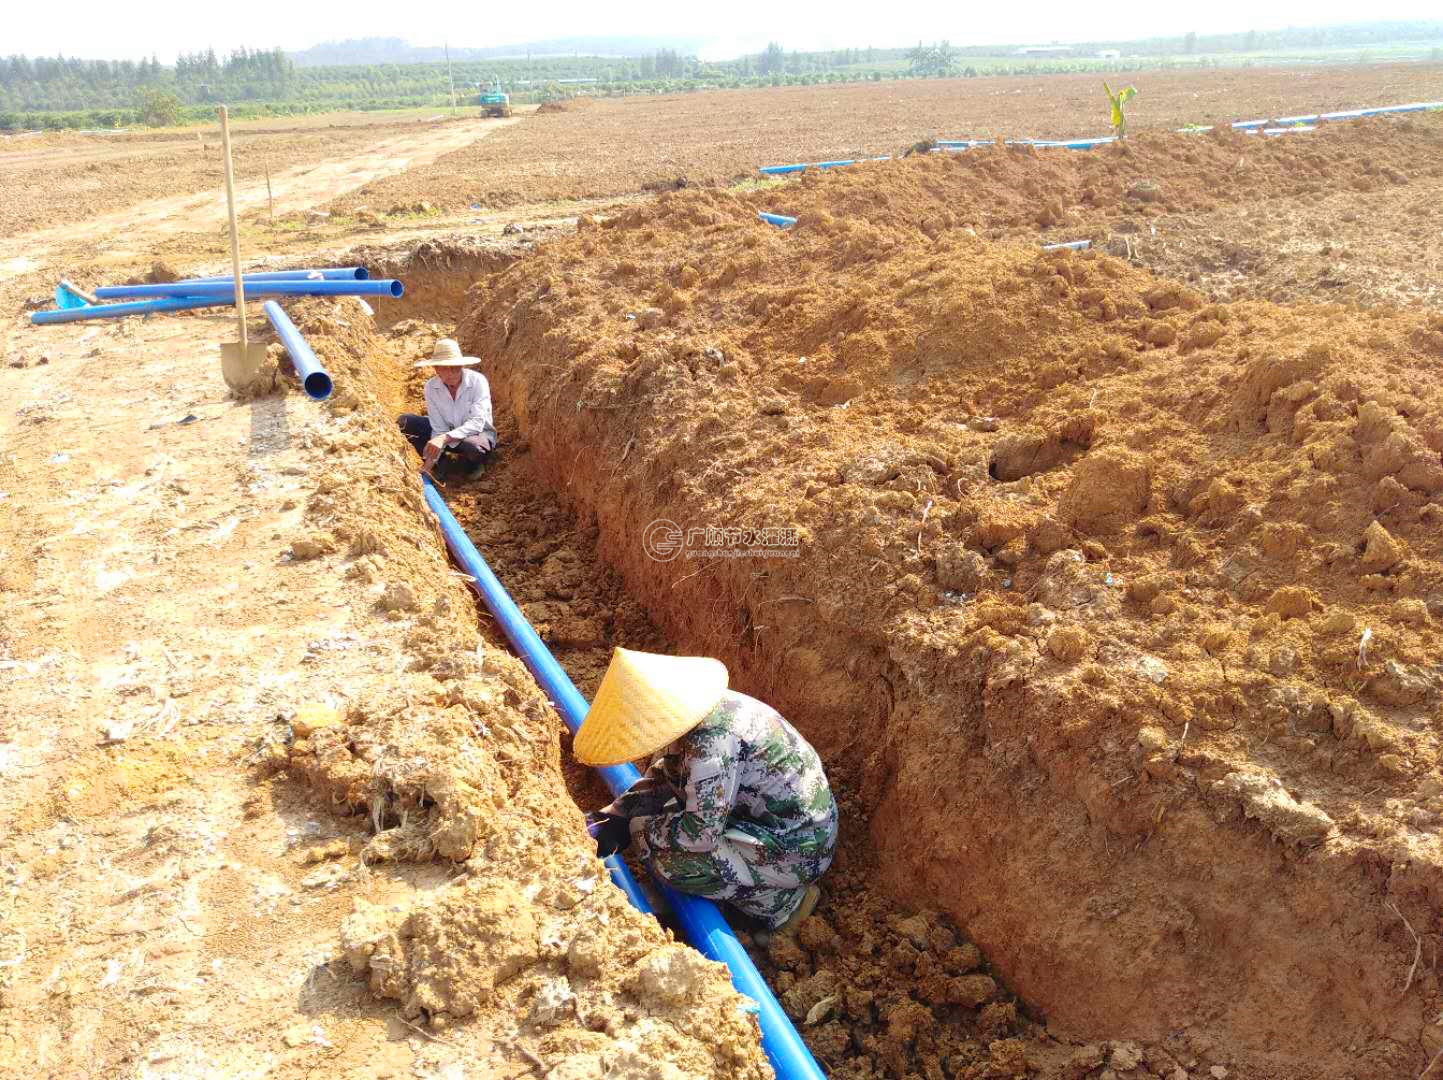 广西灌溉设备